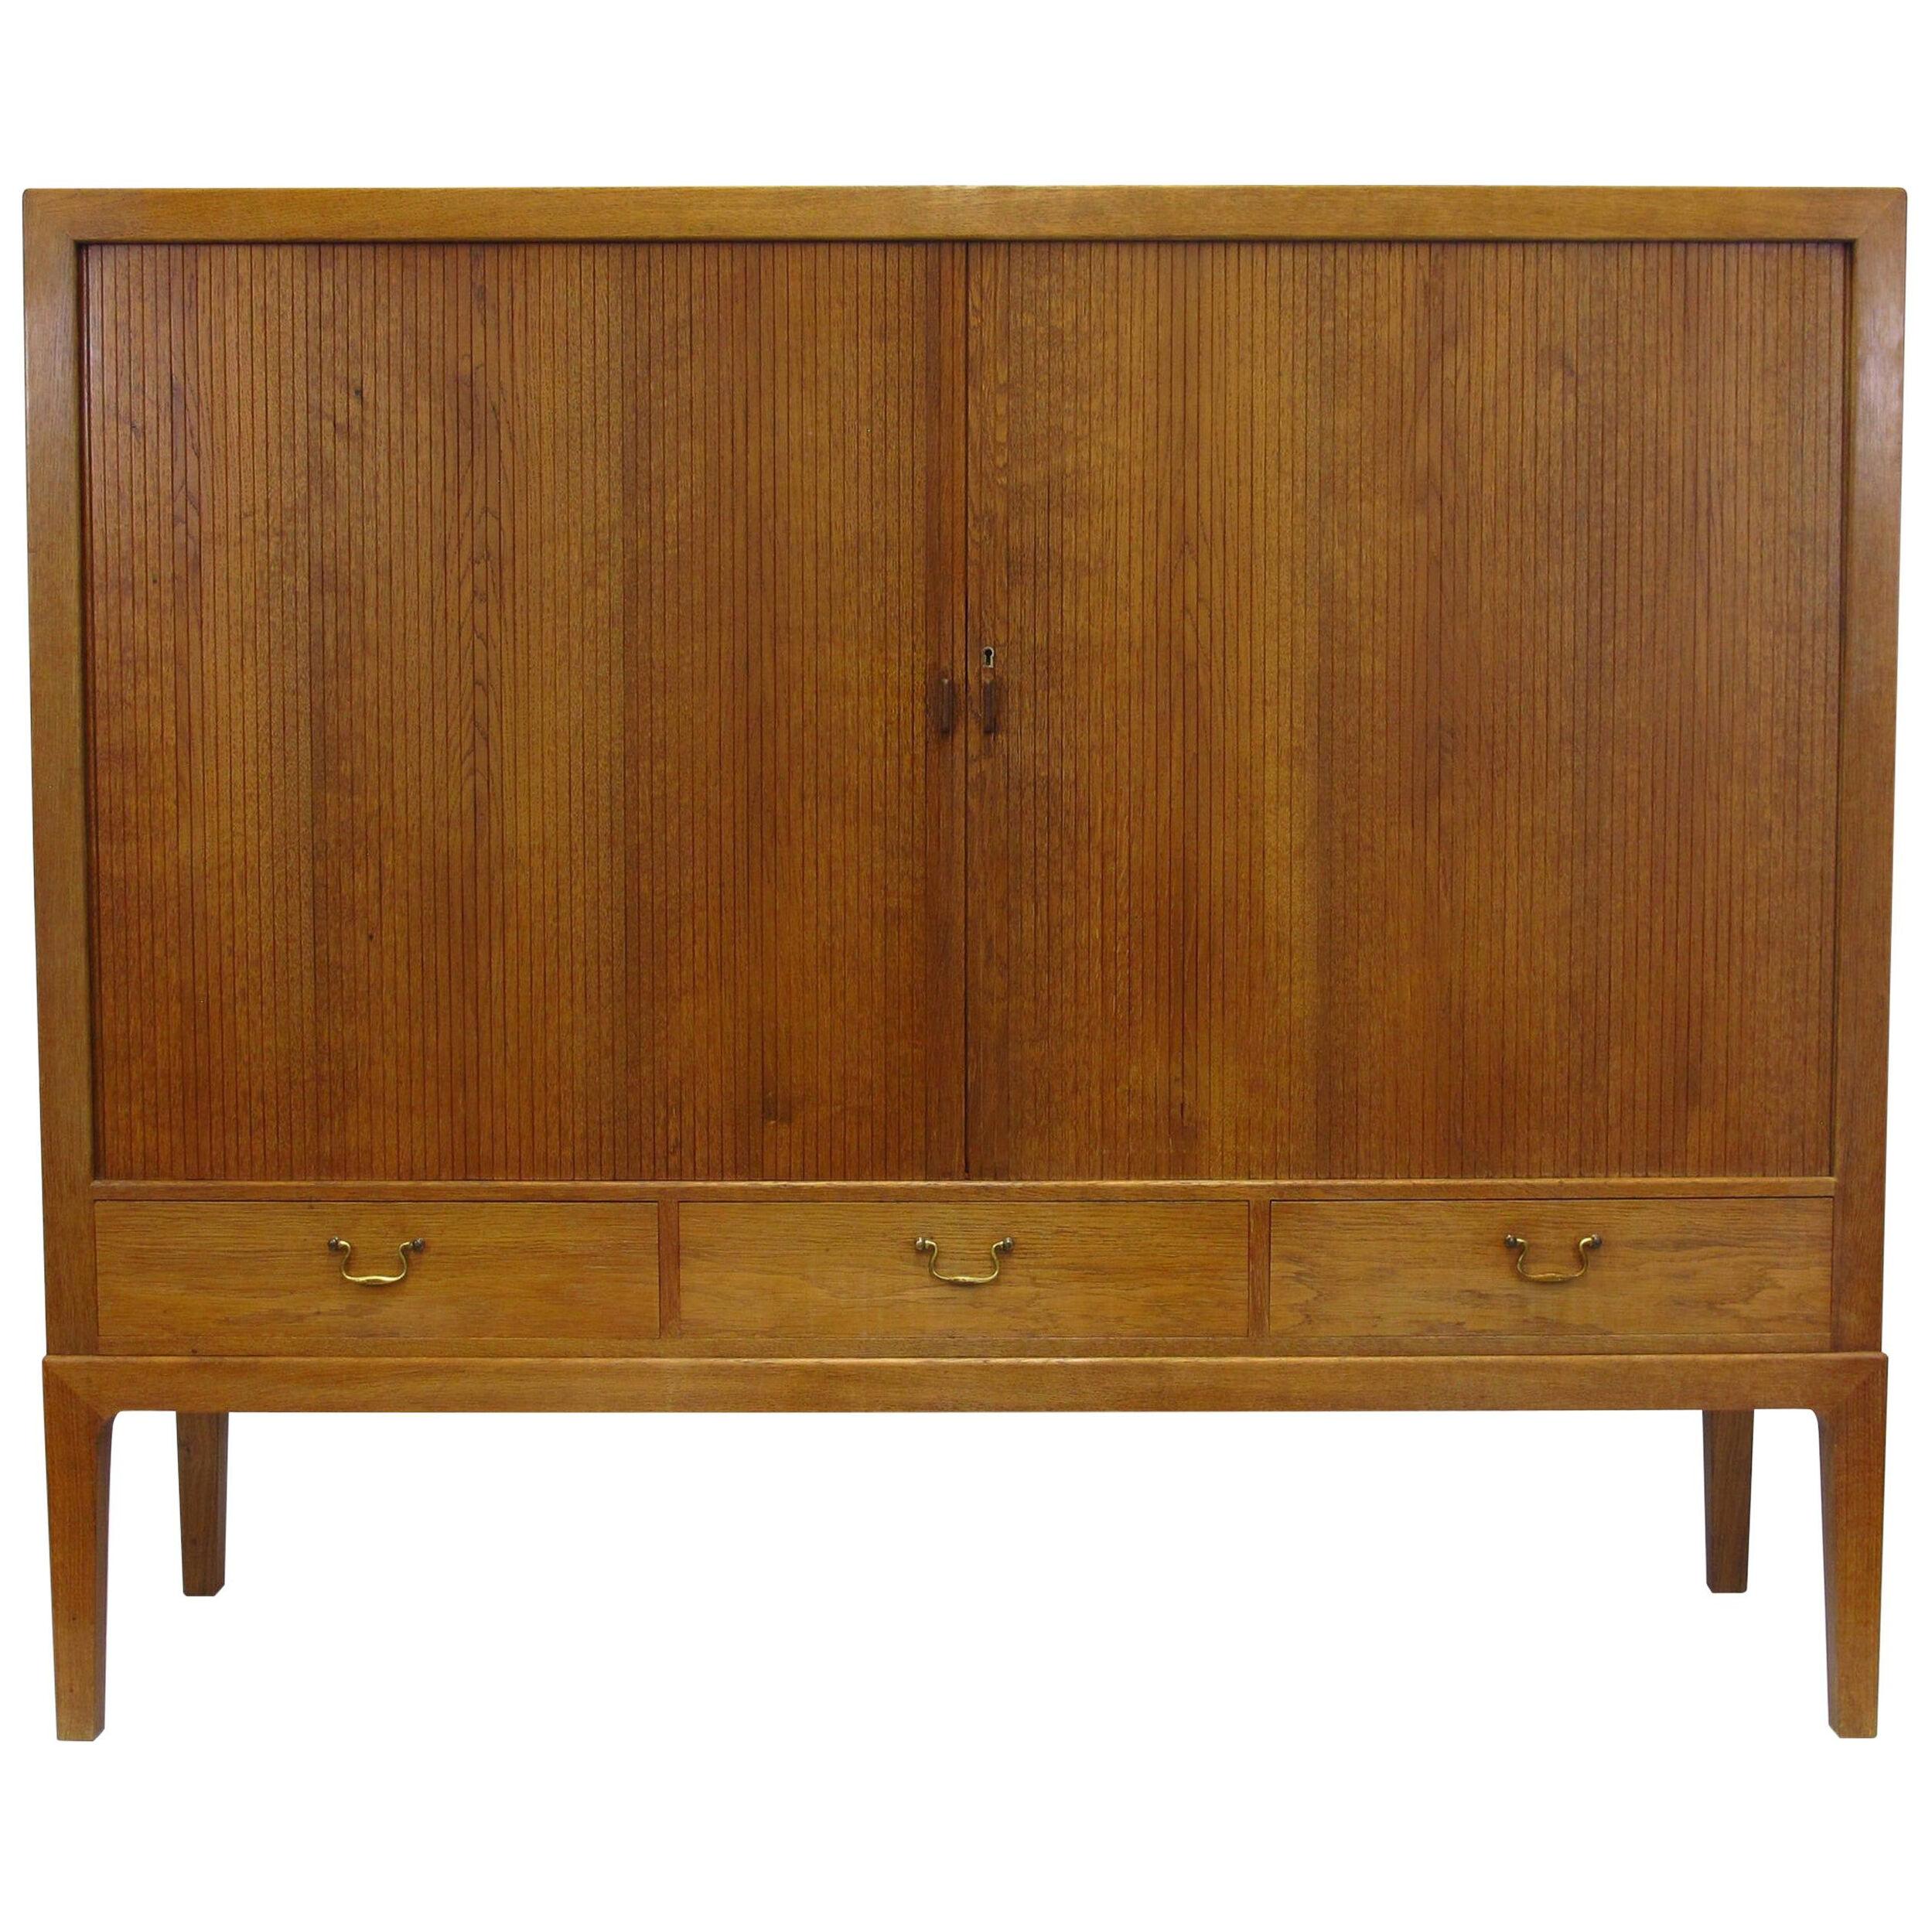 1930s Ole Wanscher Oak Sideboard Cabinet